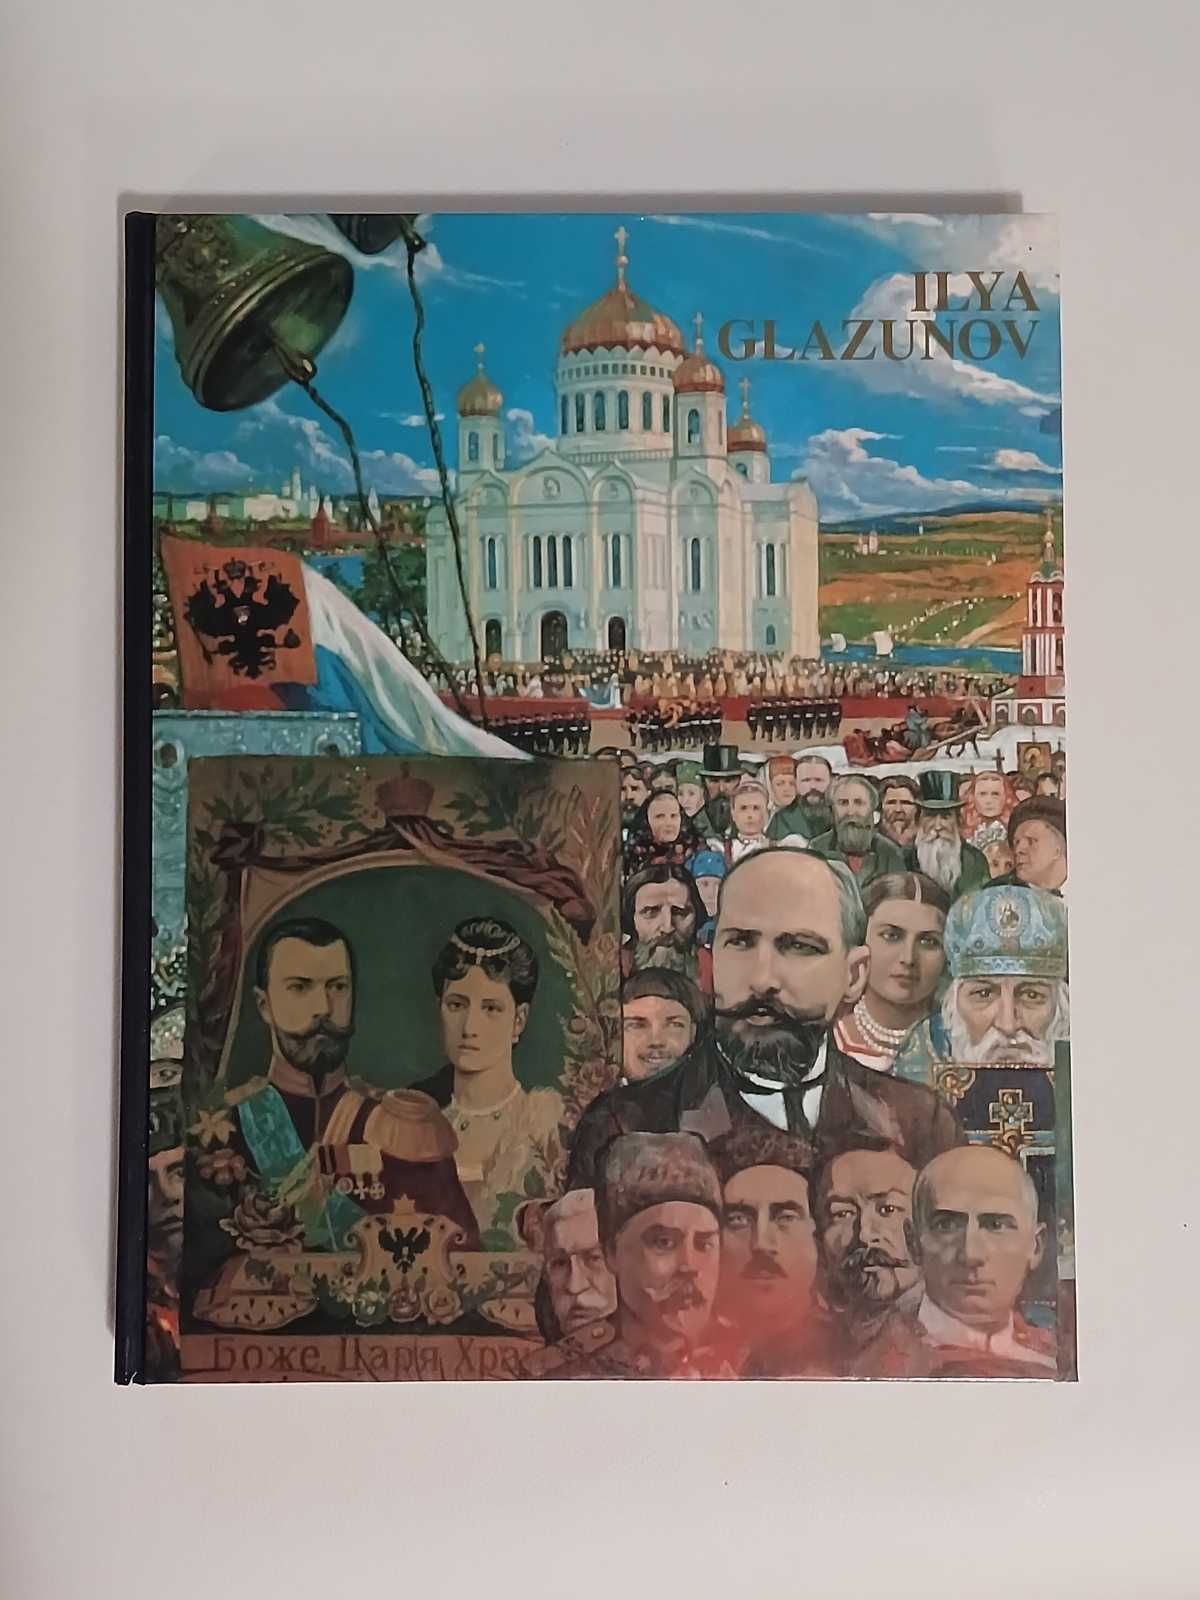 Ілля Глазунов подарункове видання  в 2-х альбомах на англійській мові